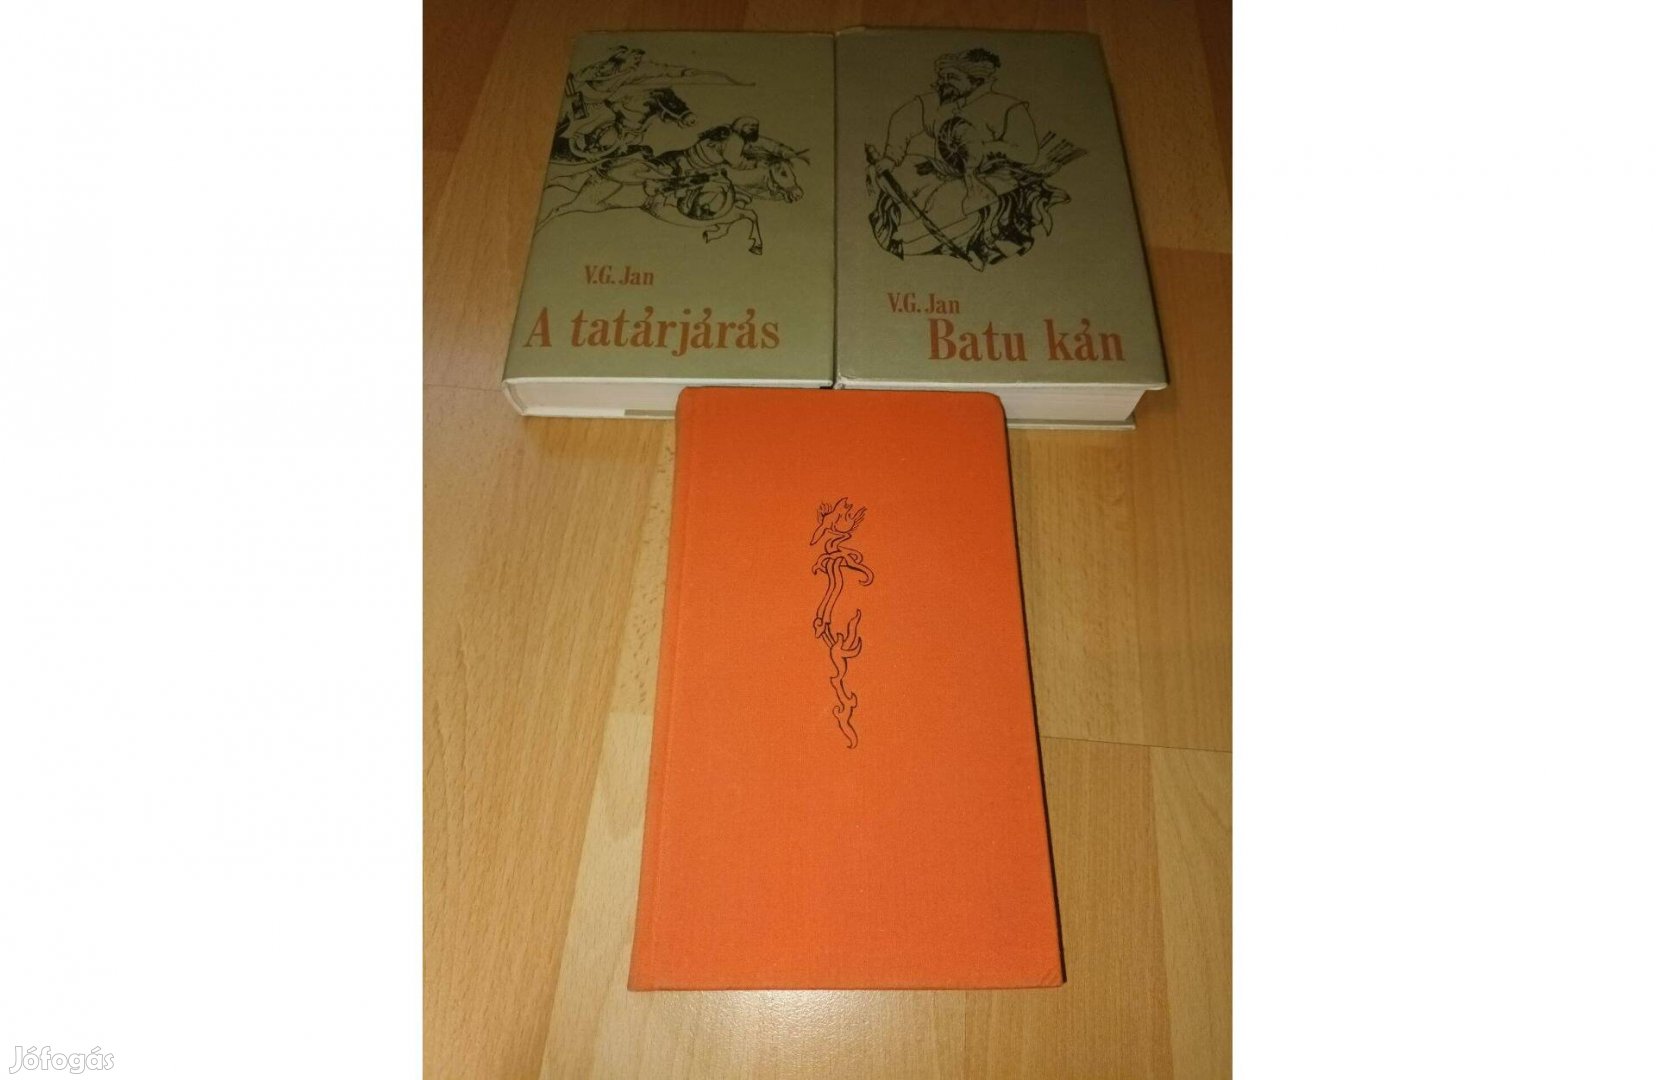 Batu kán & A tatárjárás & Dzsingisz kán - V. G. Jan - 3 db könyv